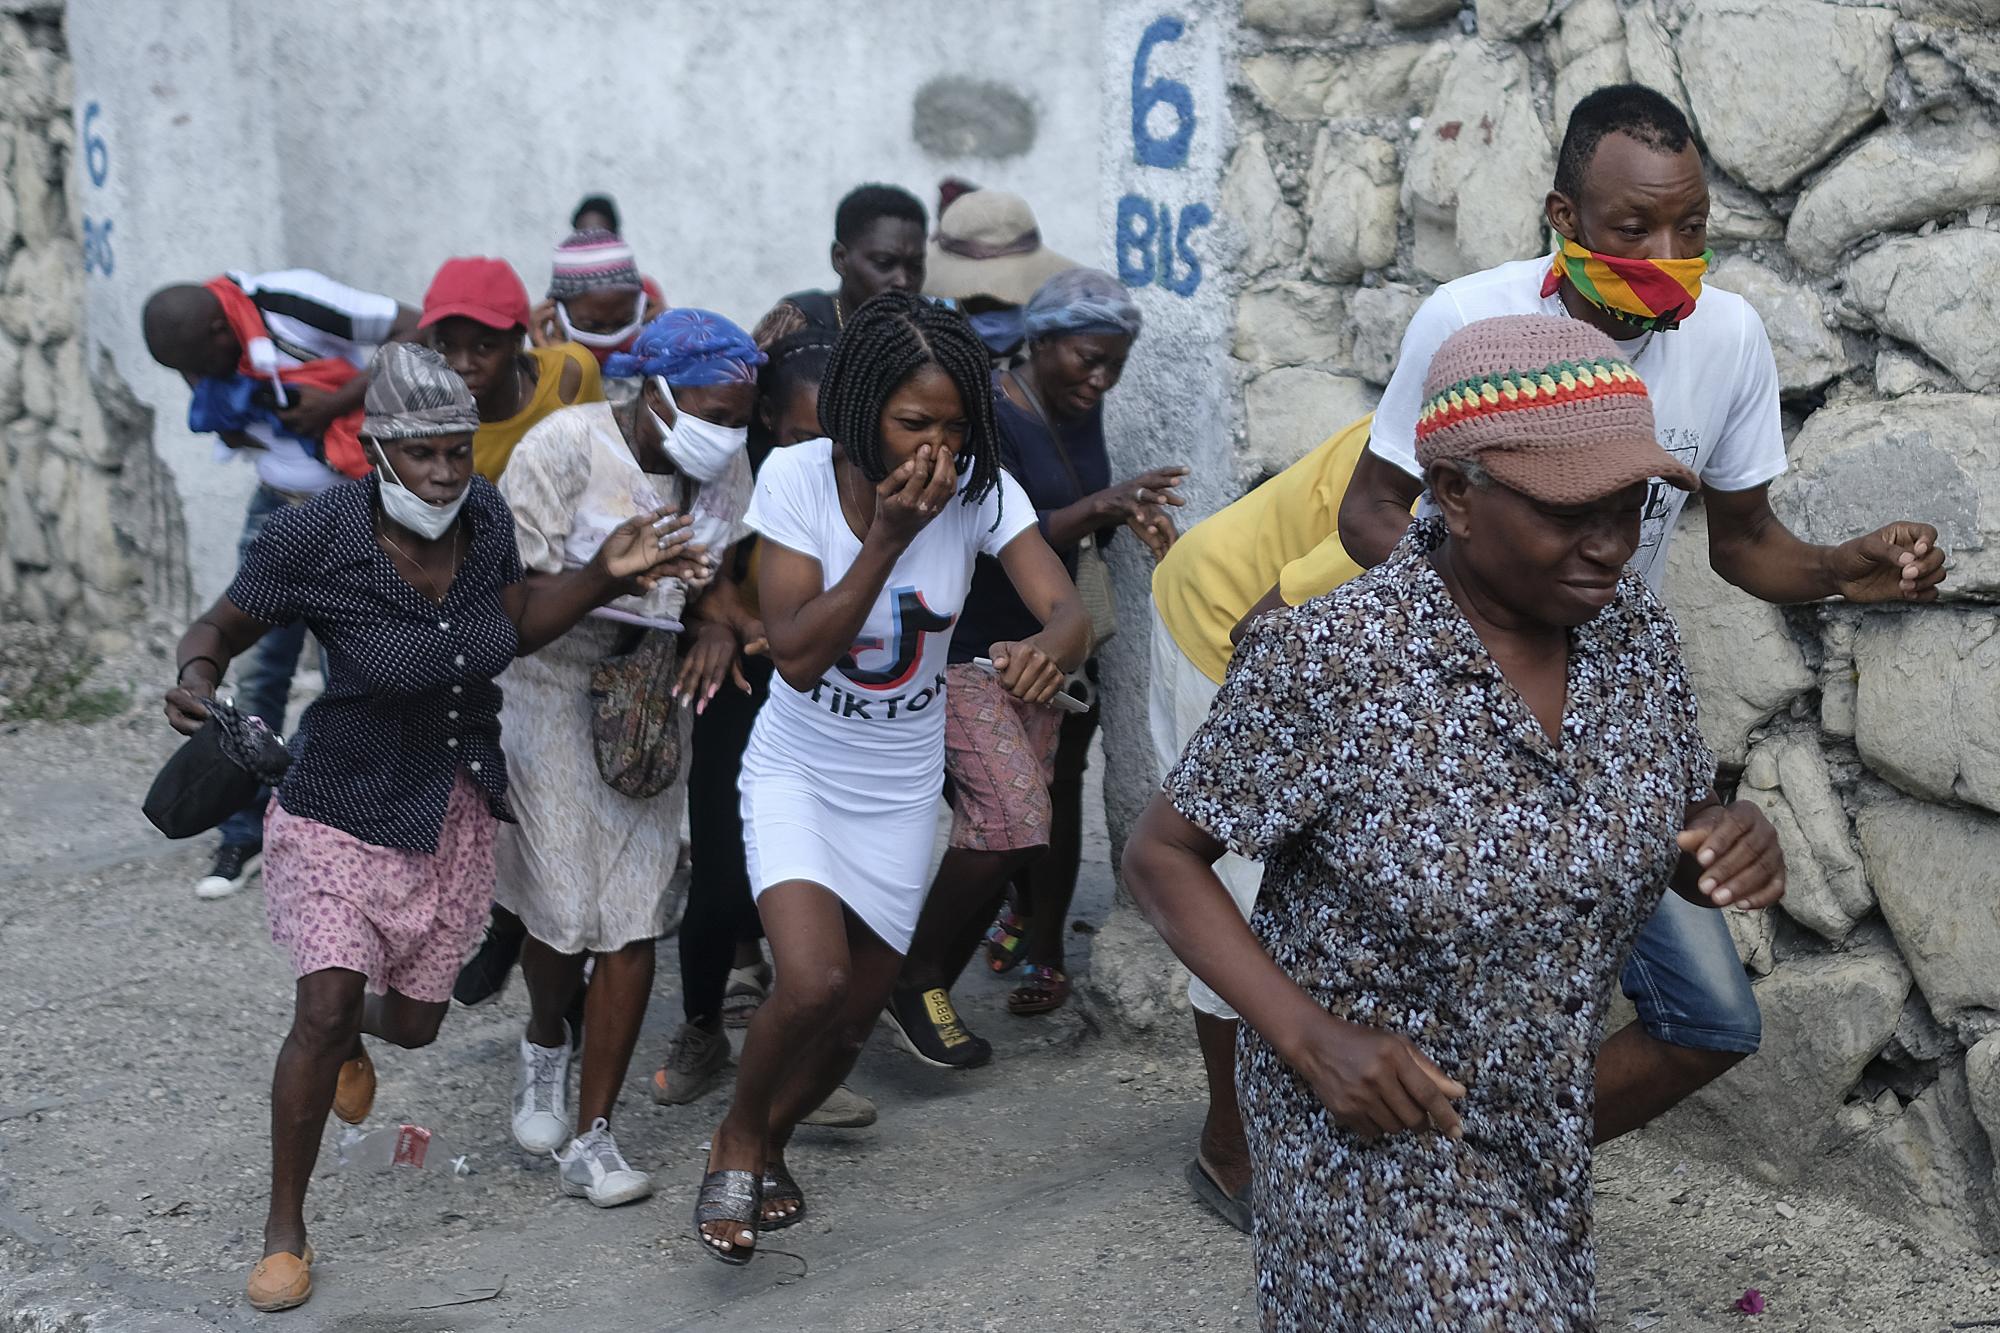 Las personas que marchaban hacia la residencia de los primeros ministros, para exigir justicia por el asesinato del presidente haitiano Jovenel Moise, huyen de los gases lacrimógenos disparados por la policía en Puerto Príncipe, Haití, el miércoles 20 de octubre de 2021. (AP Photo/Matias Delacroix)